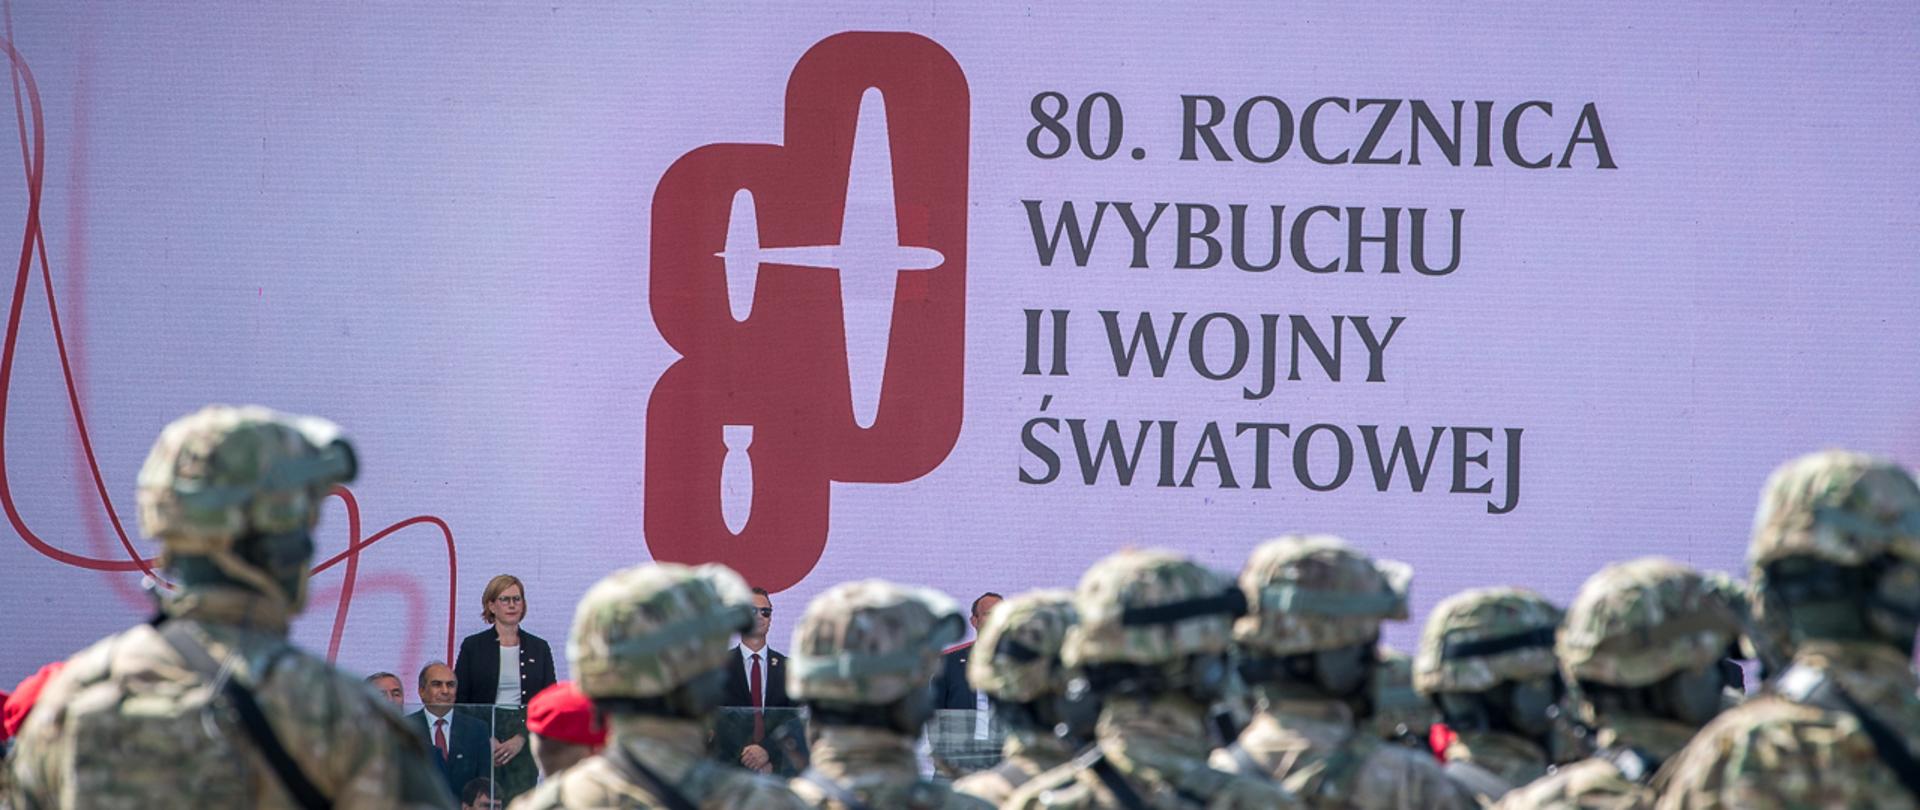 1 września przed Grobem Nieznanego Żołnierza w Warszawie odbyły się obchody upamiętniające 80. rocznicę II wojny światowej. W uroczystościach państwowych z udziałem prezydenta RP Andrzeja Dudy i wiceprezydenta USA M. Pence’a uczestniczył Mariusz Błaszczak, minister obrony narodowej.